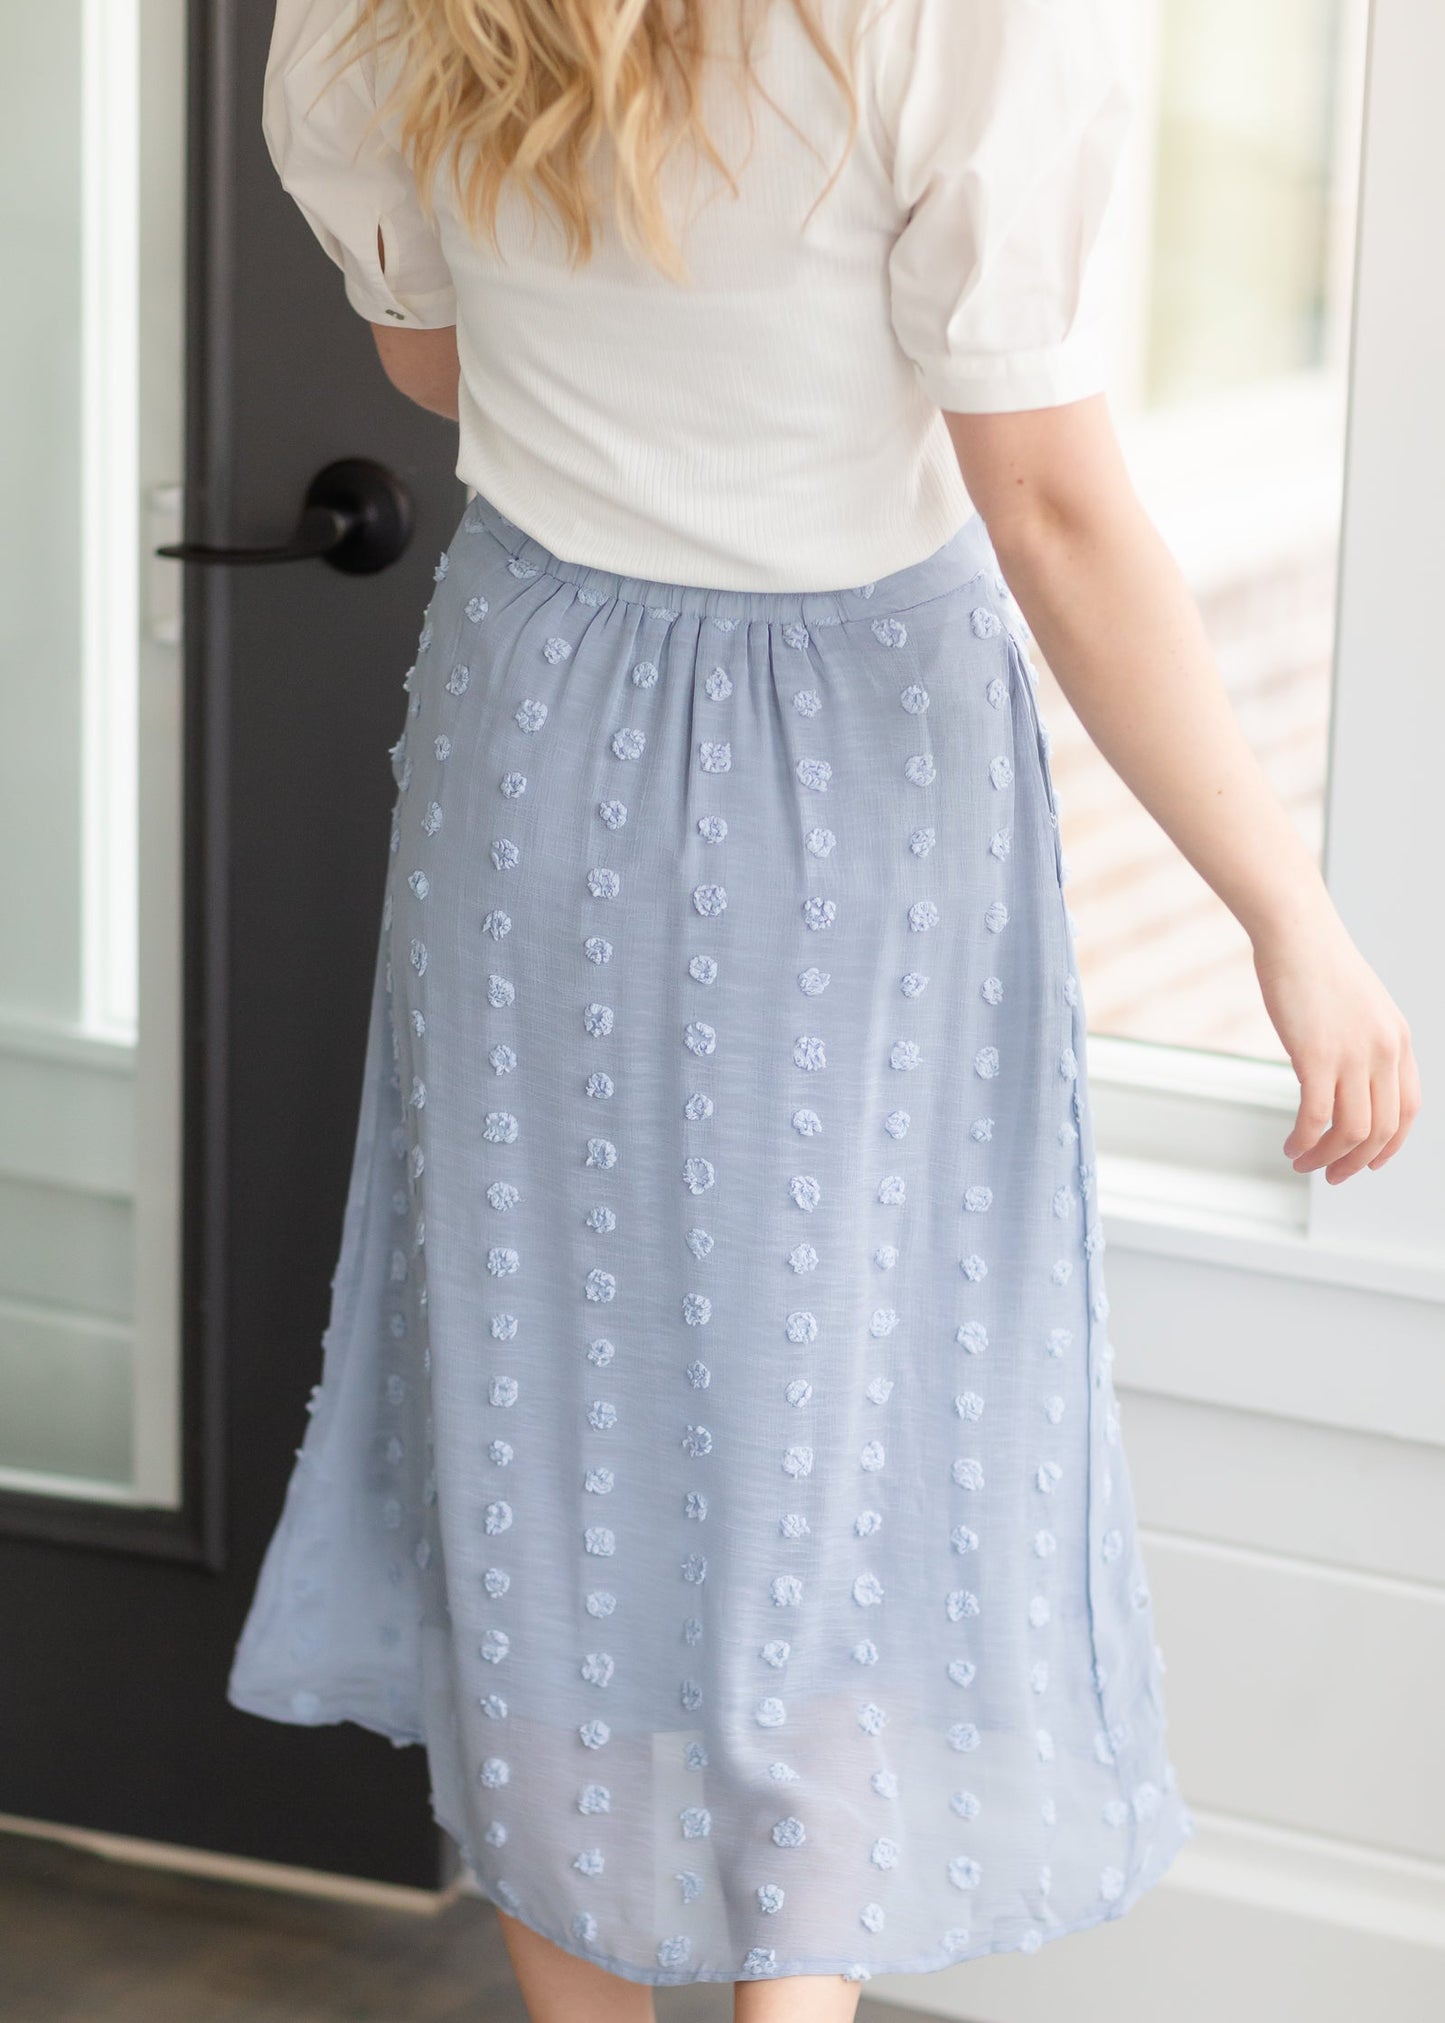 Dusty Blue Chiffon Midi Skirt - FINAL SALE Skirts